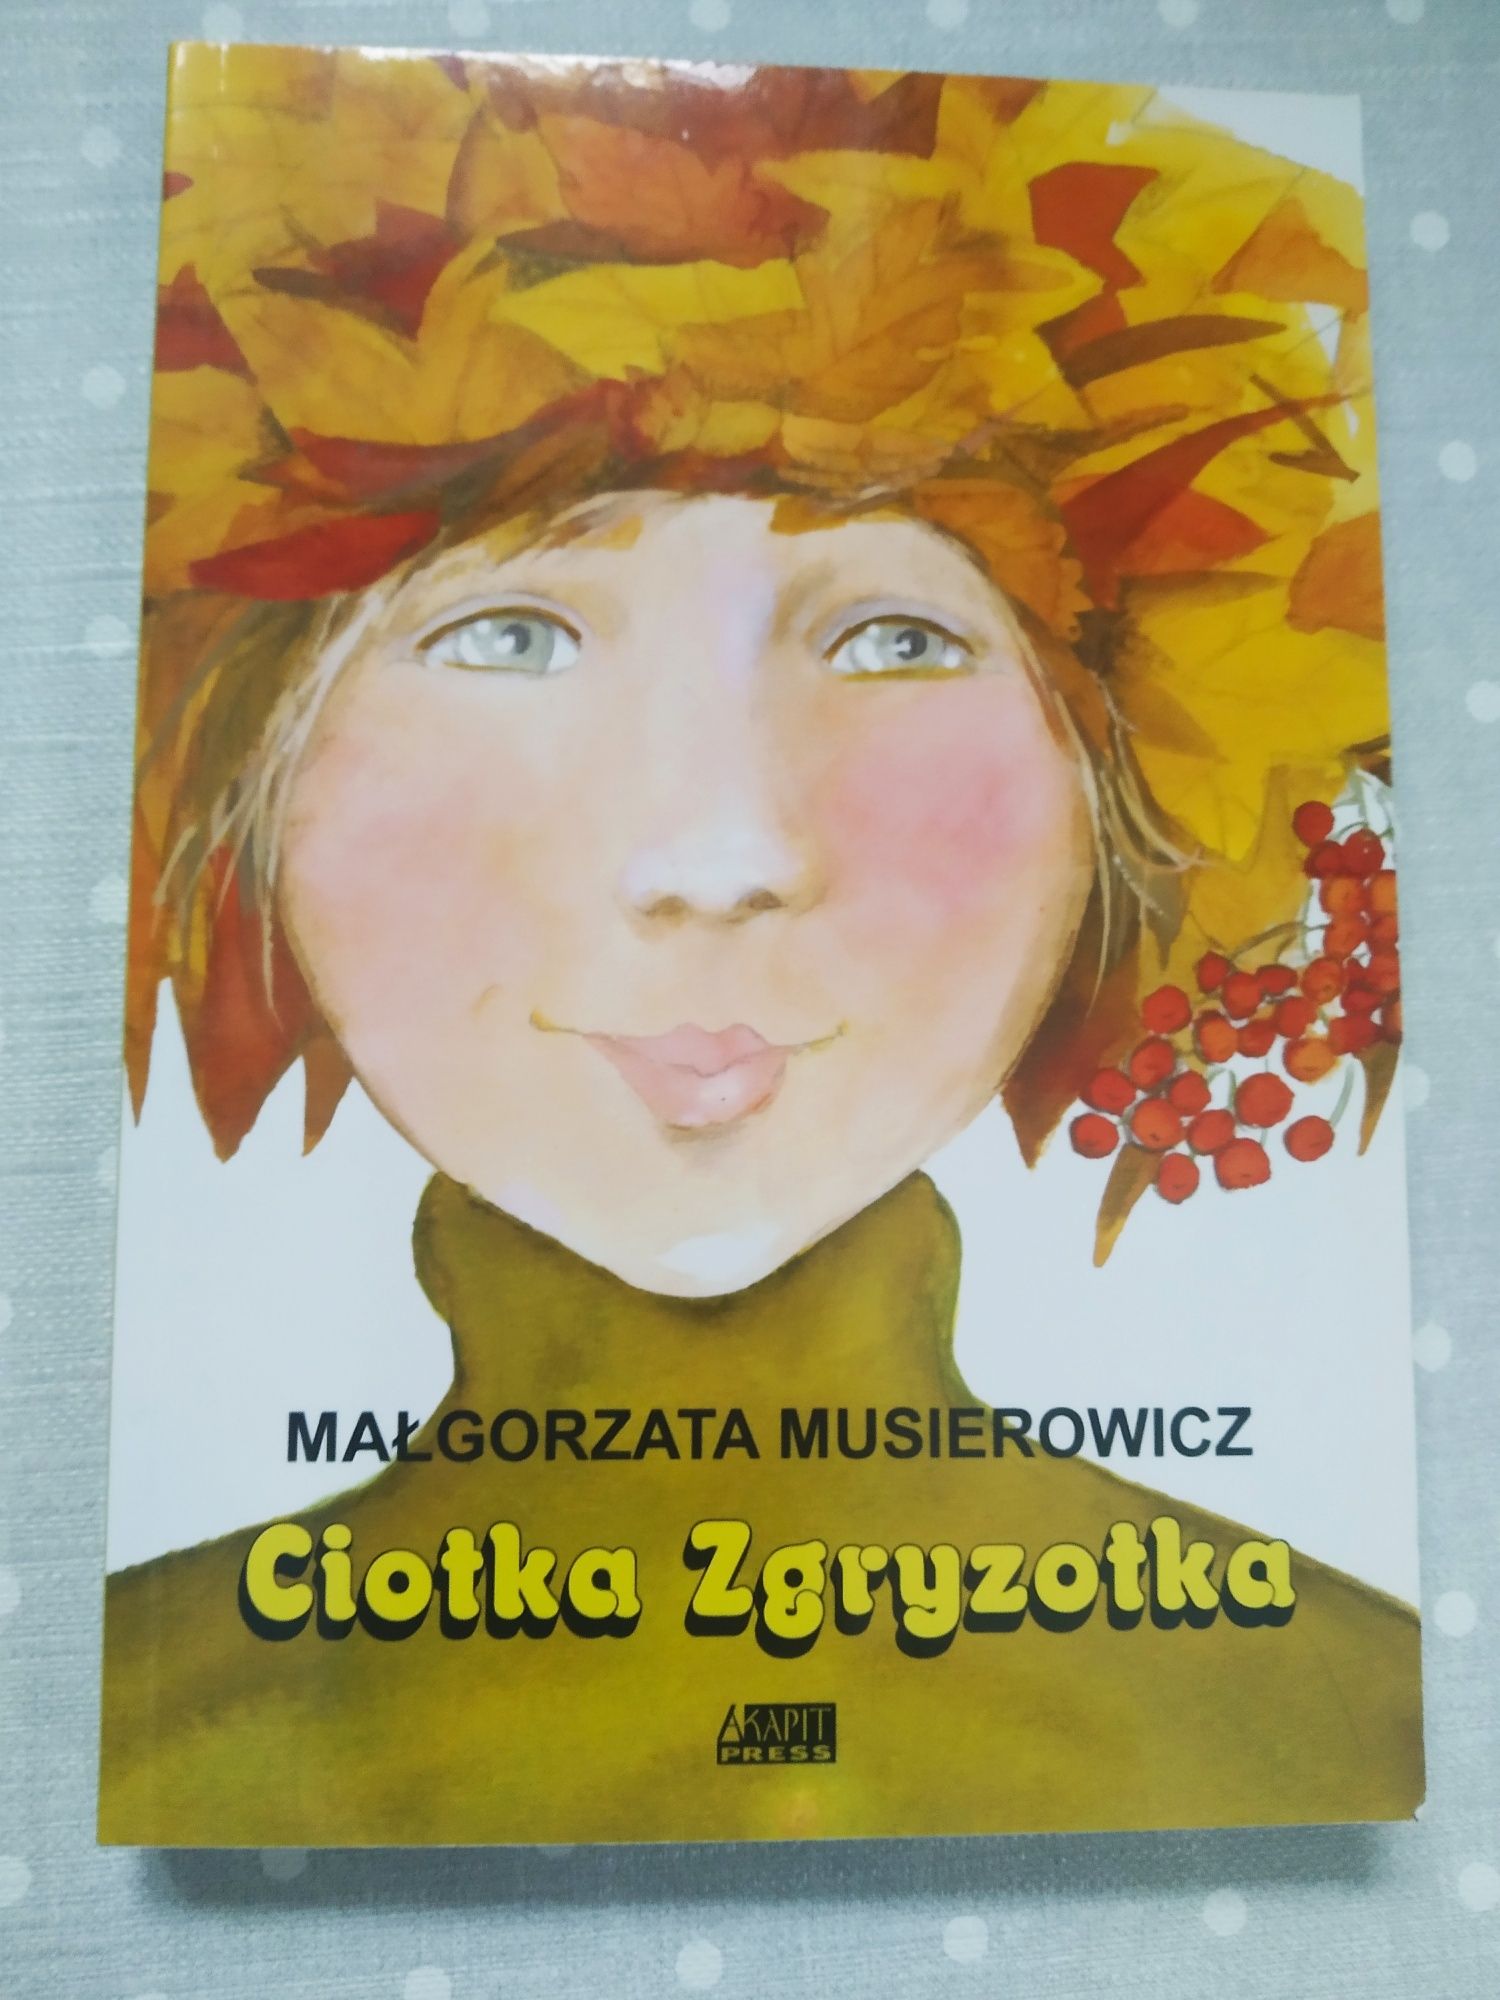 Małgorzata Musierowicz "Ciotka Zgryzotka"